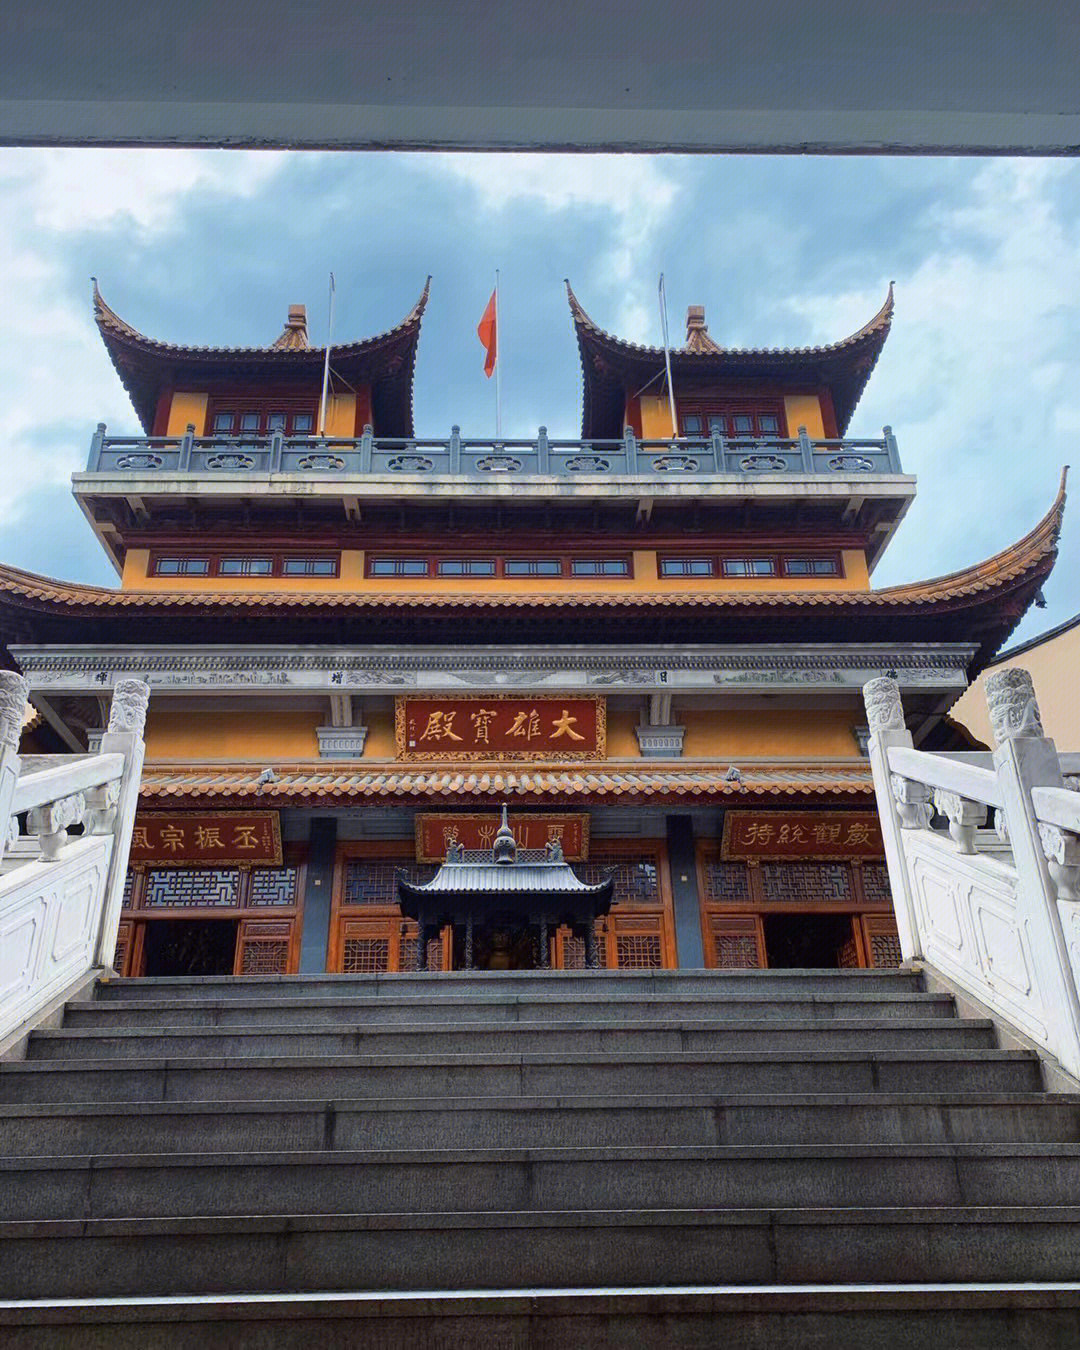 上海大隐隐于市的寺庙老西门法藏讲寺